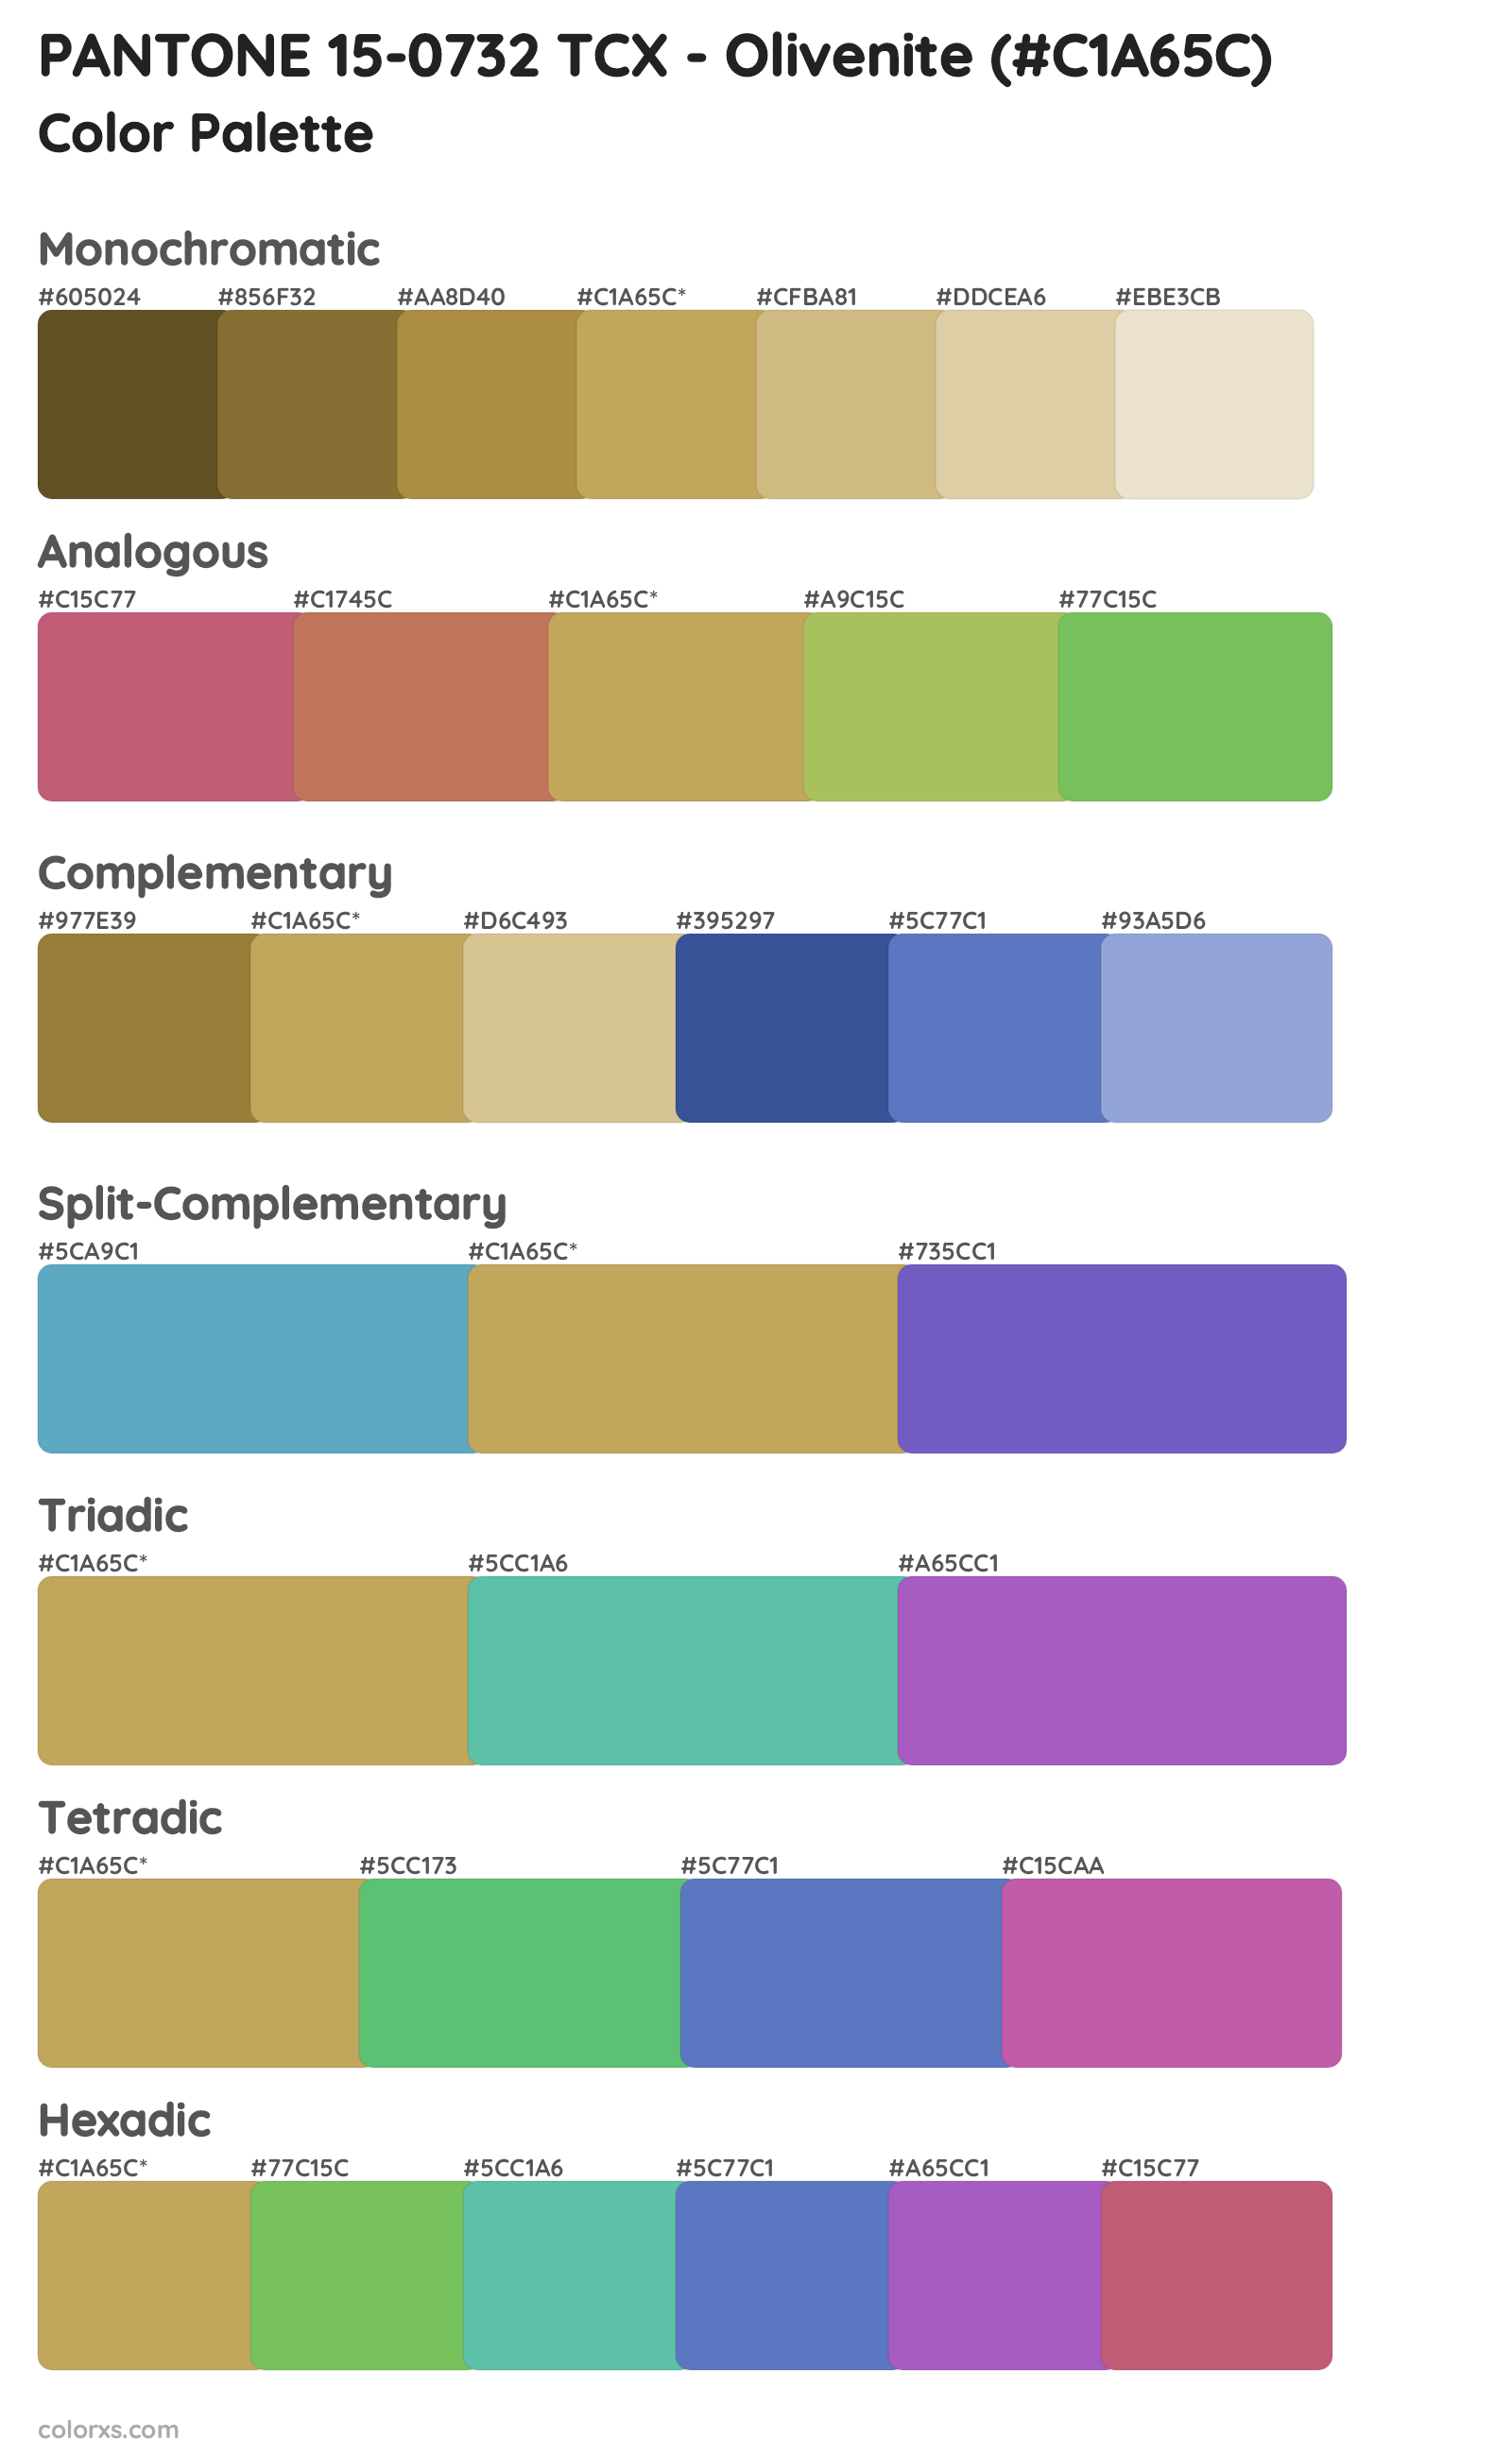 PANTONE 15-0732 TCX - Olivenite Color Scheme Palettes